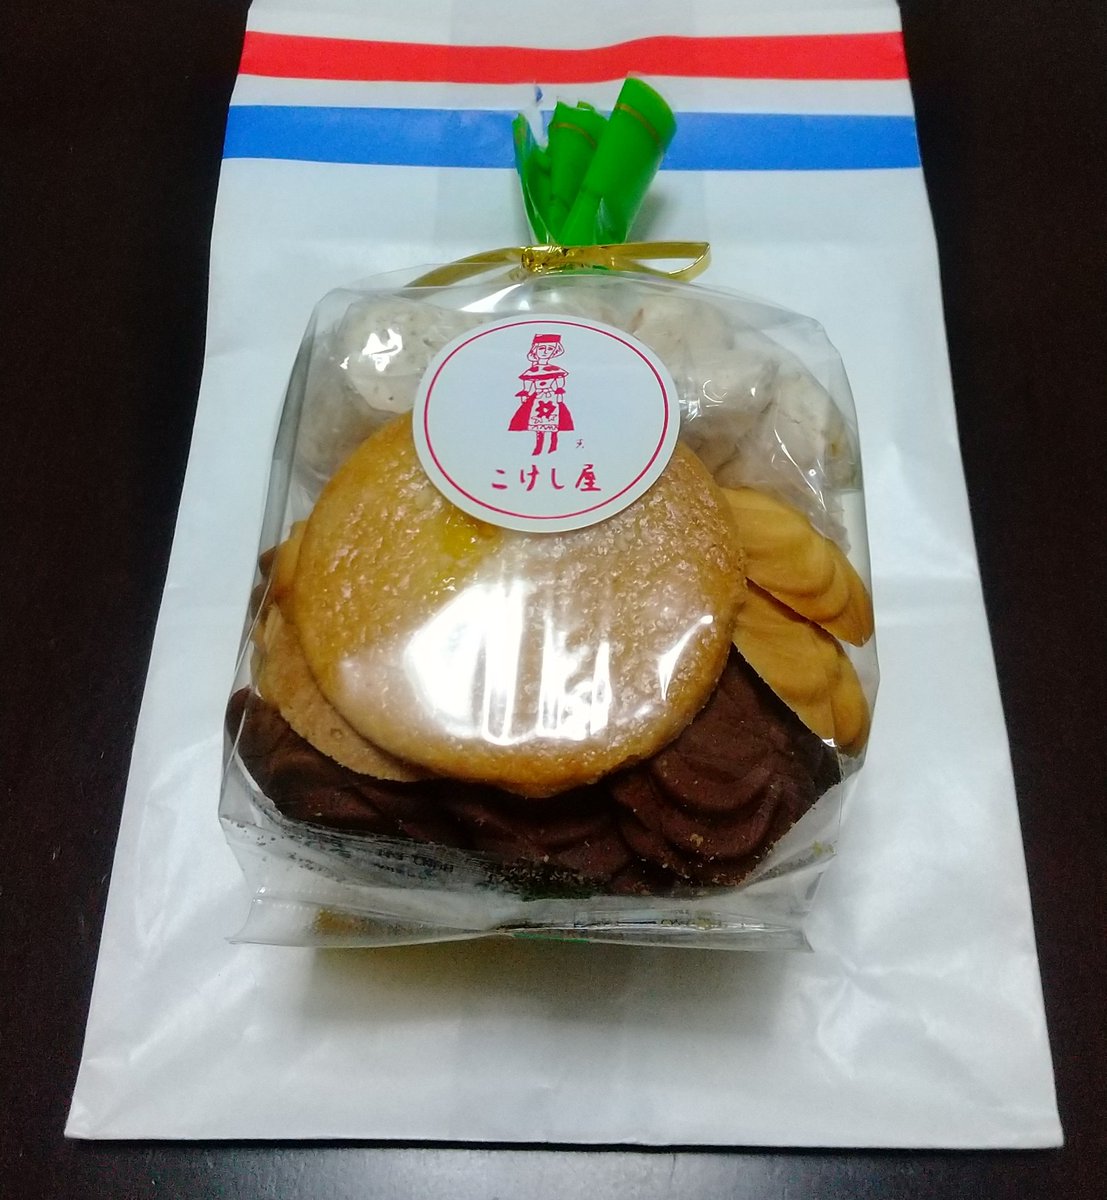 Akiko 昨日 西荻窪のこけし屋さんで買ったクッキーです なにかお土産に買って帰りたいと思って持ち運び が手軽なものを探したらクッキーに でも会計のあとロールケーキを発見して そっちの方が良いなぁと思ったけど今回はクッキーにしておこうと店を出